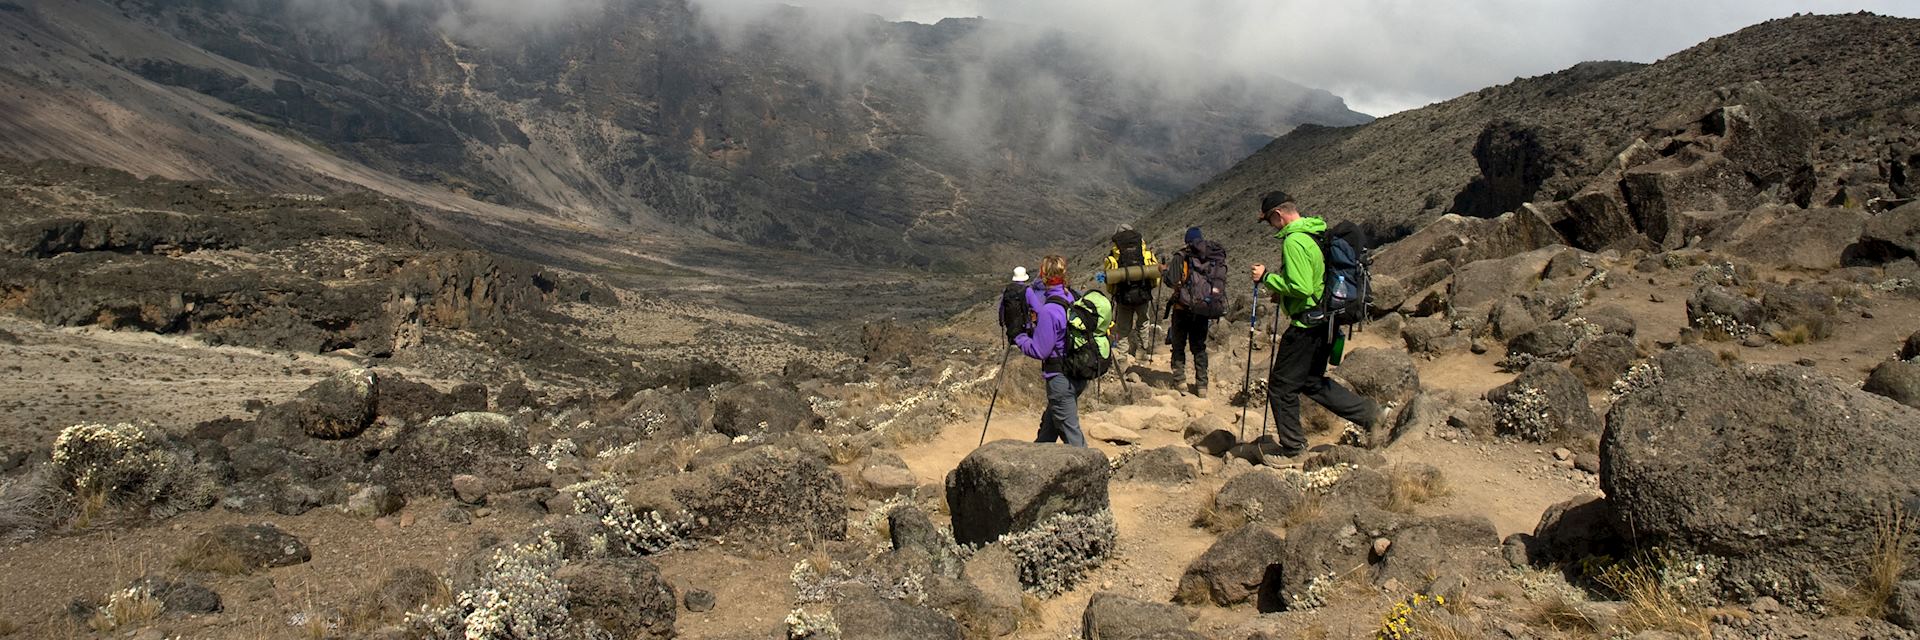 Hiking Mount Kilimanjaro